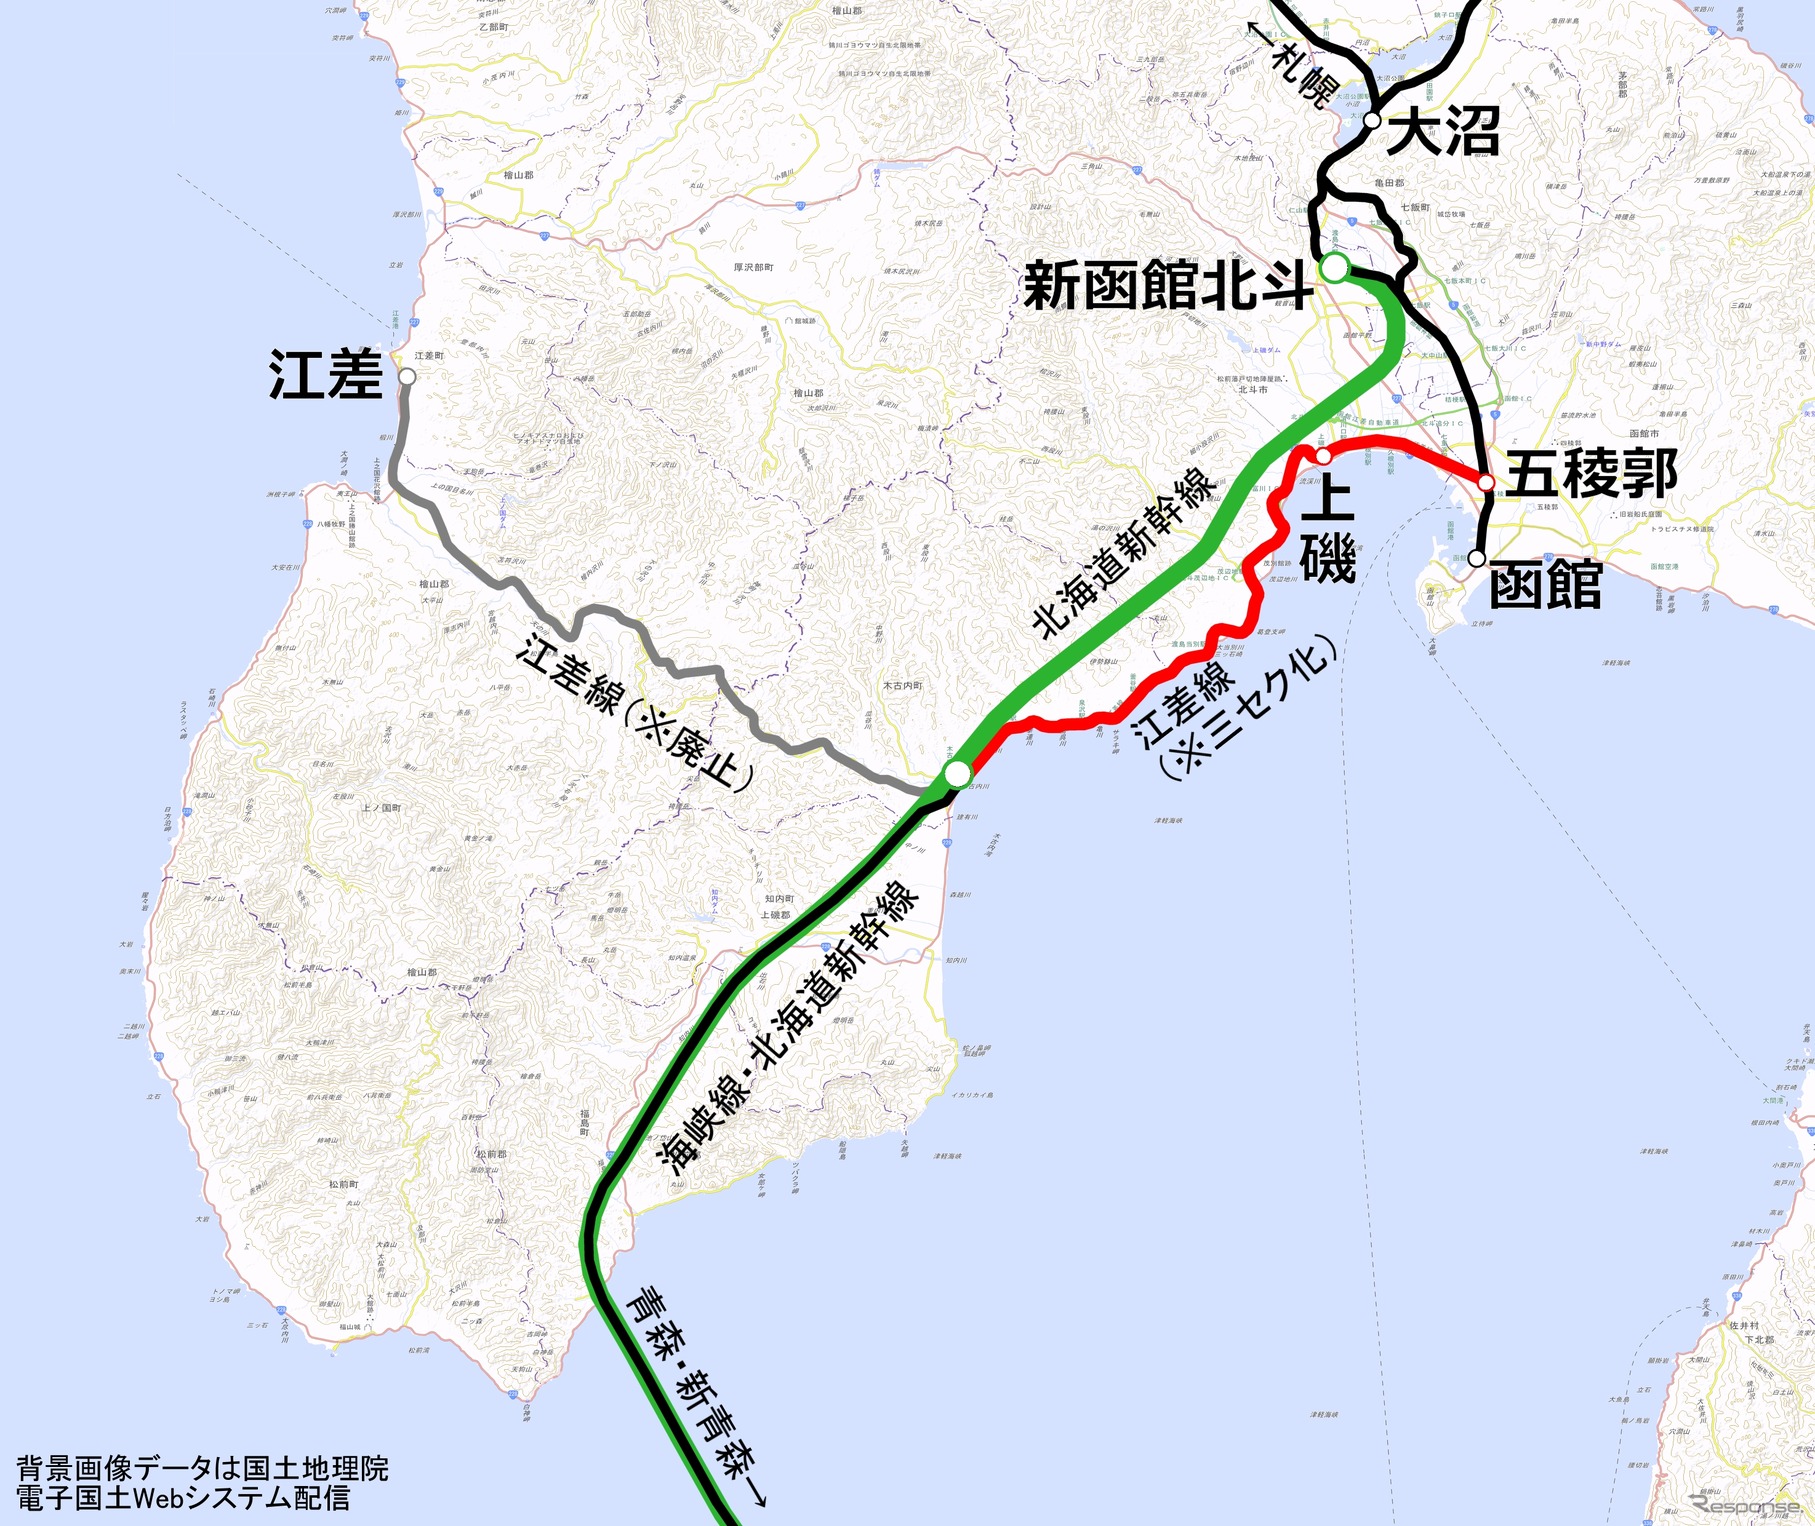 三セク会社が引き継ぐ江差線（赤）とその周辺のJR線。三セク会社の列車は函館本線に乗り入れて函館駅まで運転する。